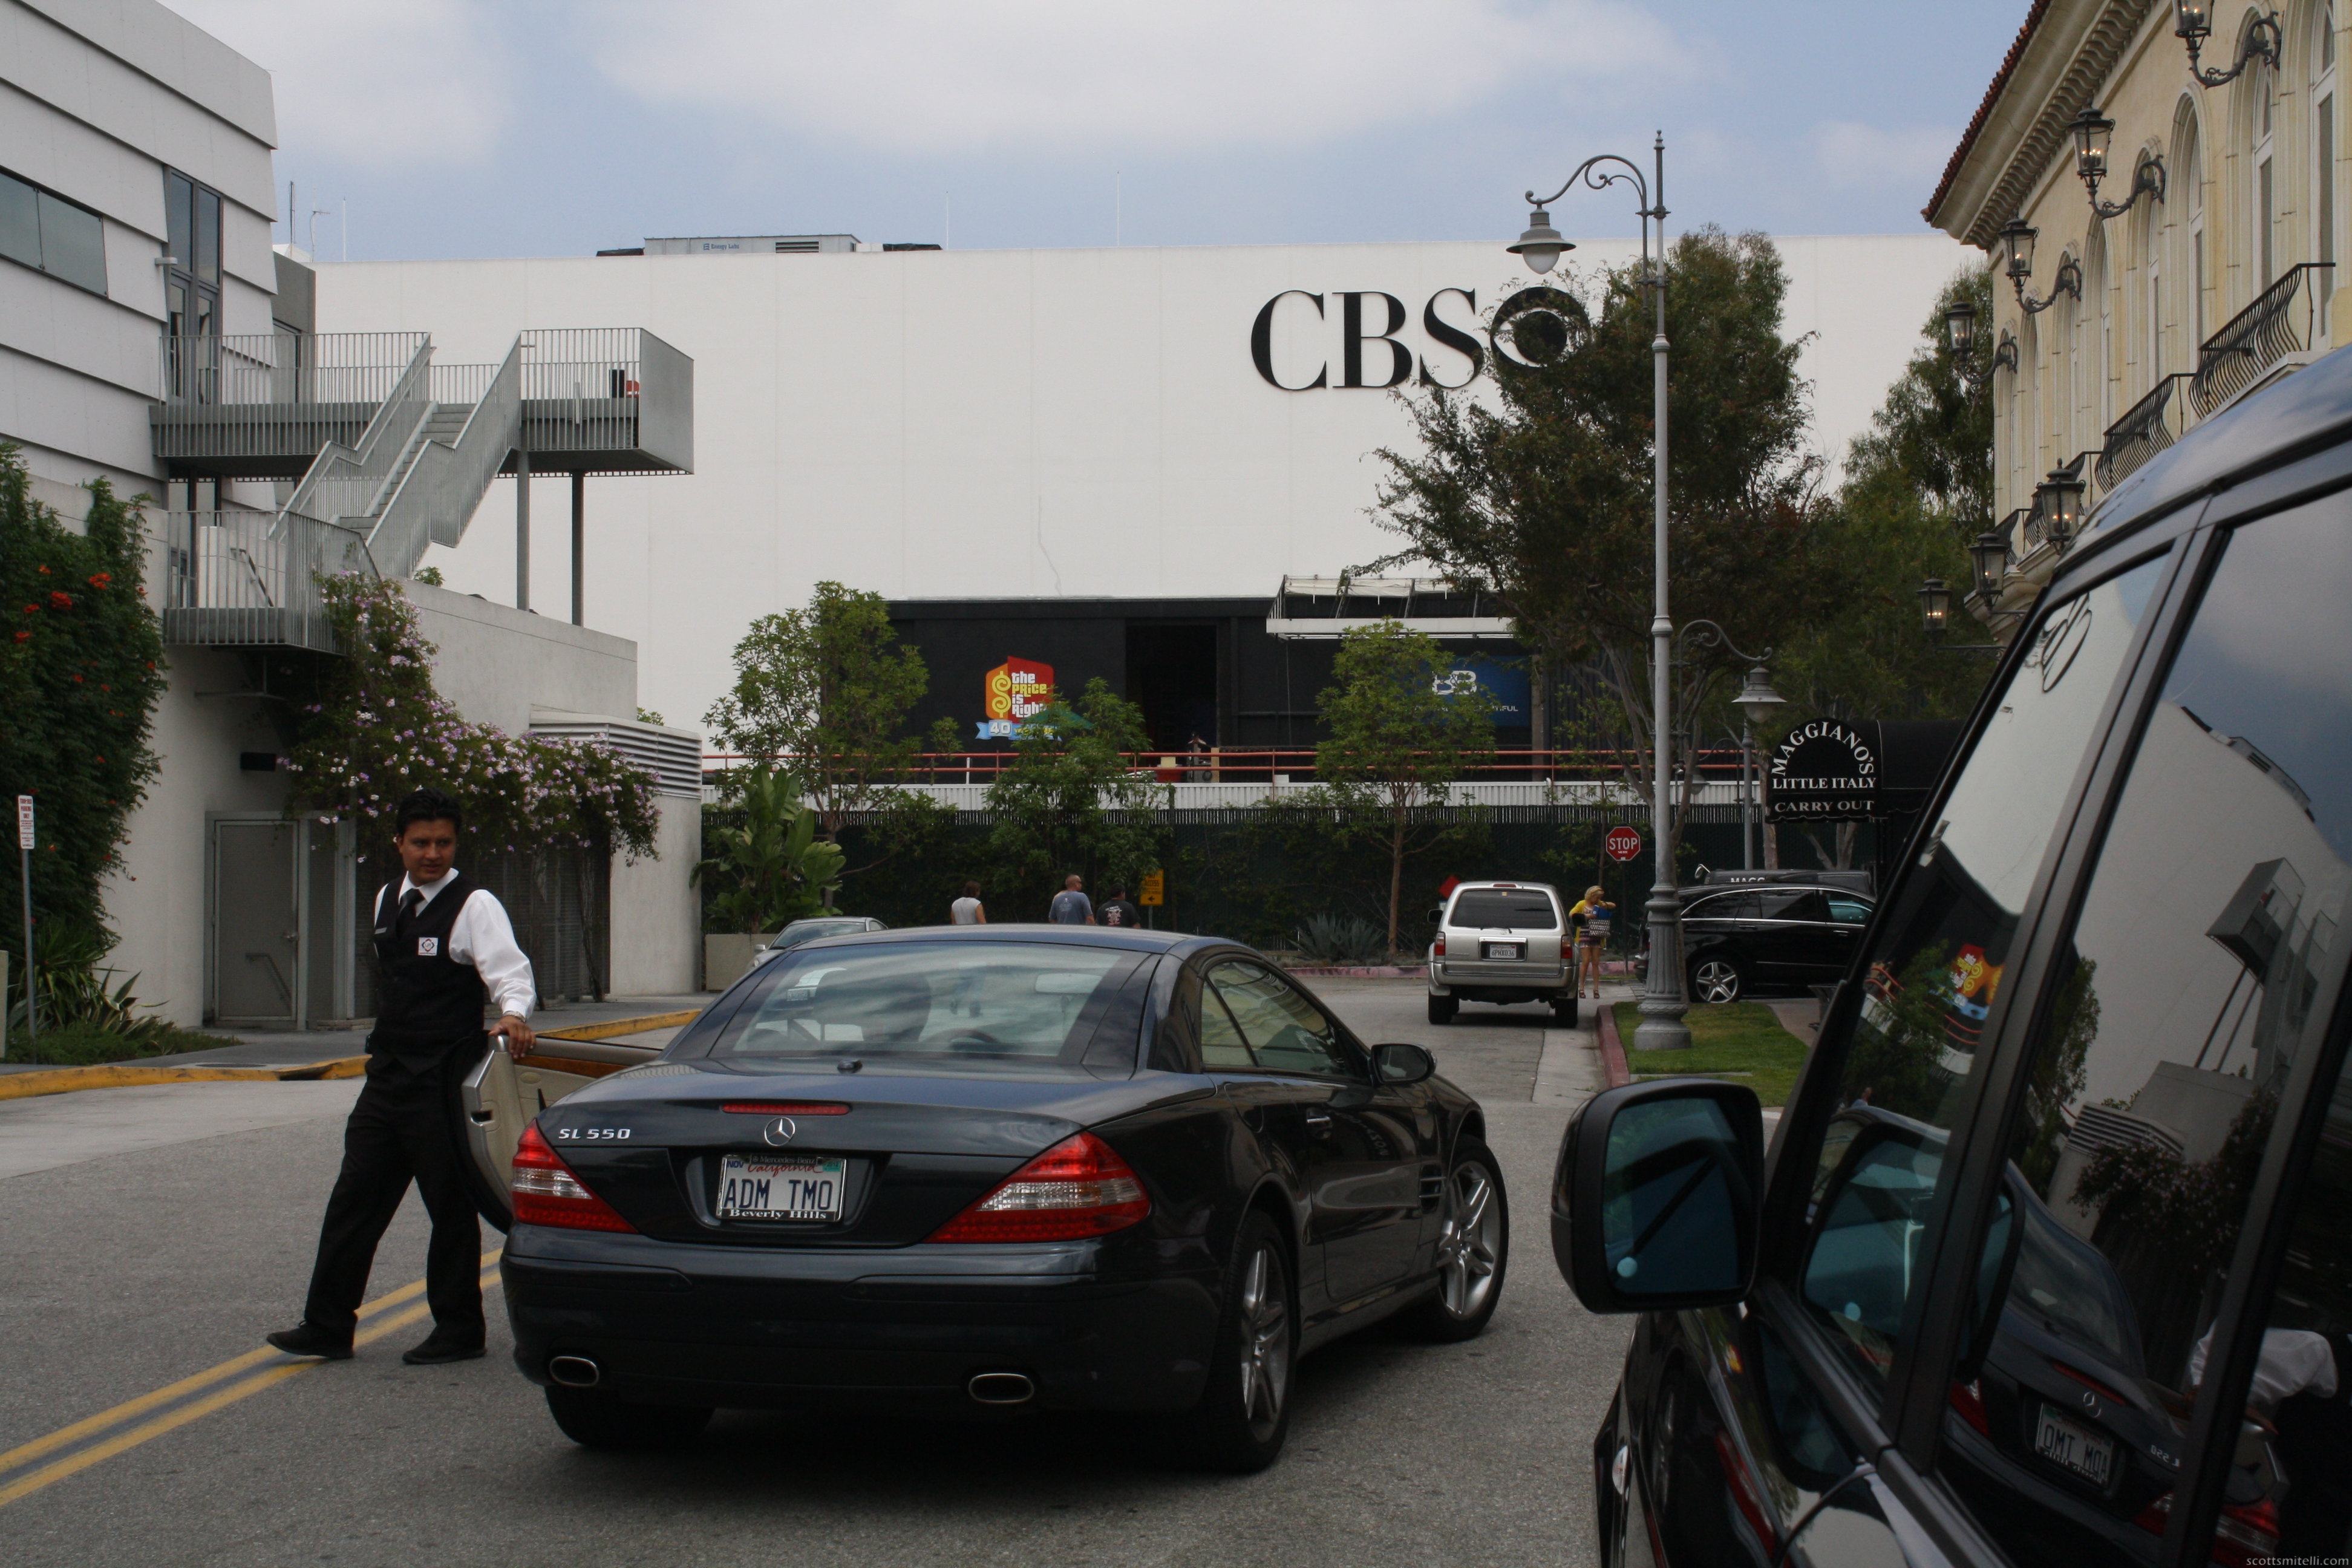 Cars at CBS